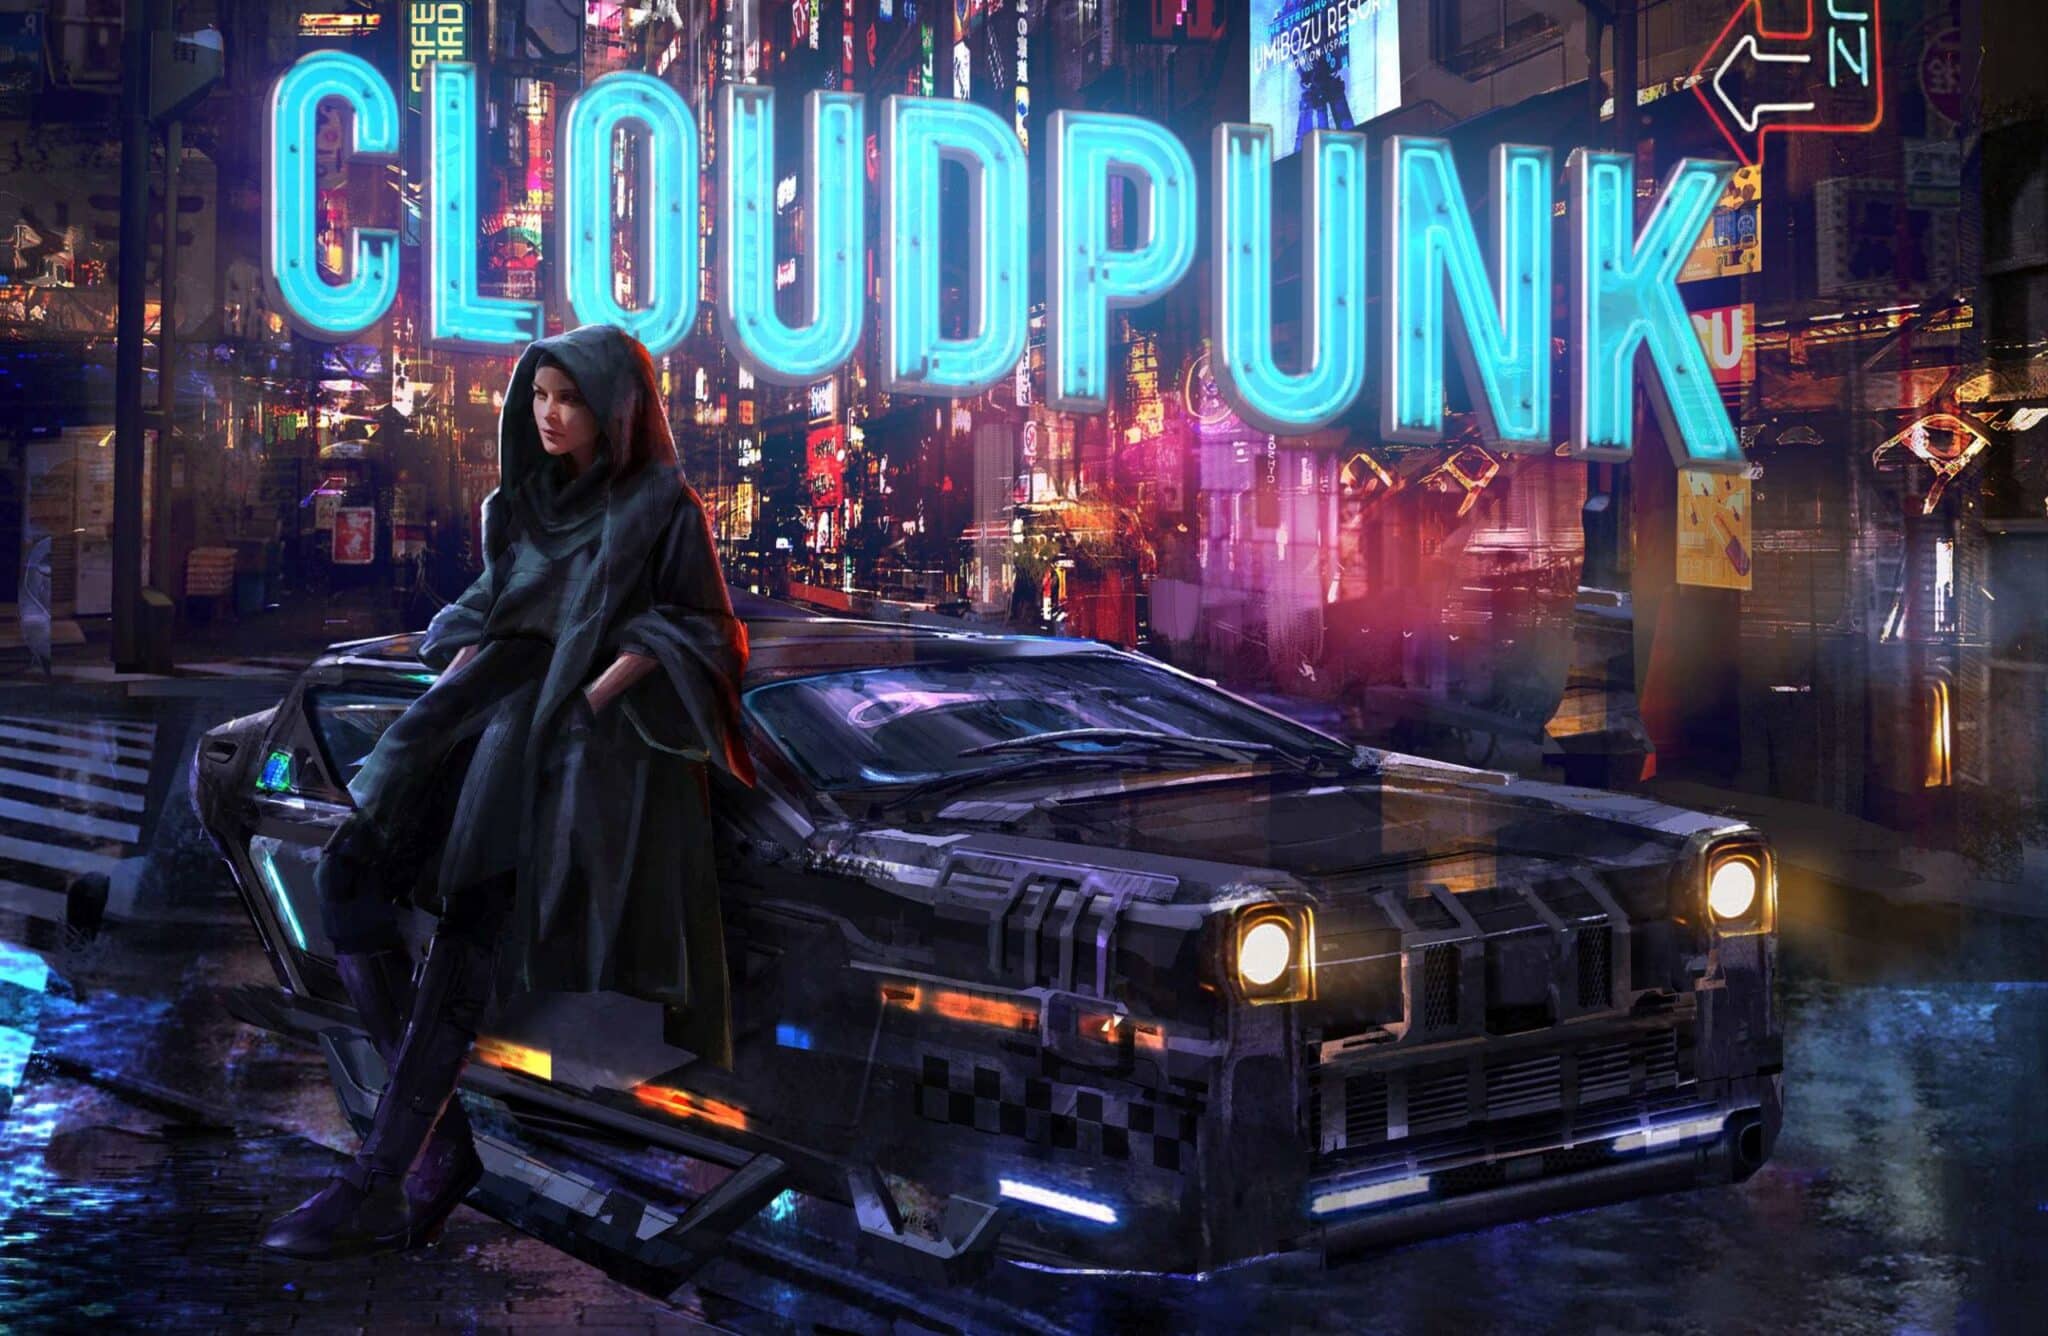 Cloudpunk ganhará uma versão de colecionador | 84d1d6a1 af4a 11ea aef2 42010af009f0 scaled scaled | married games notícias | cloudpunk